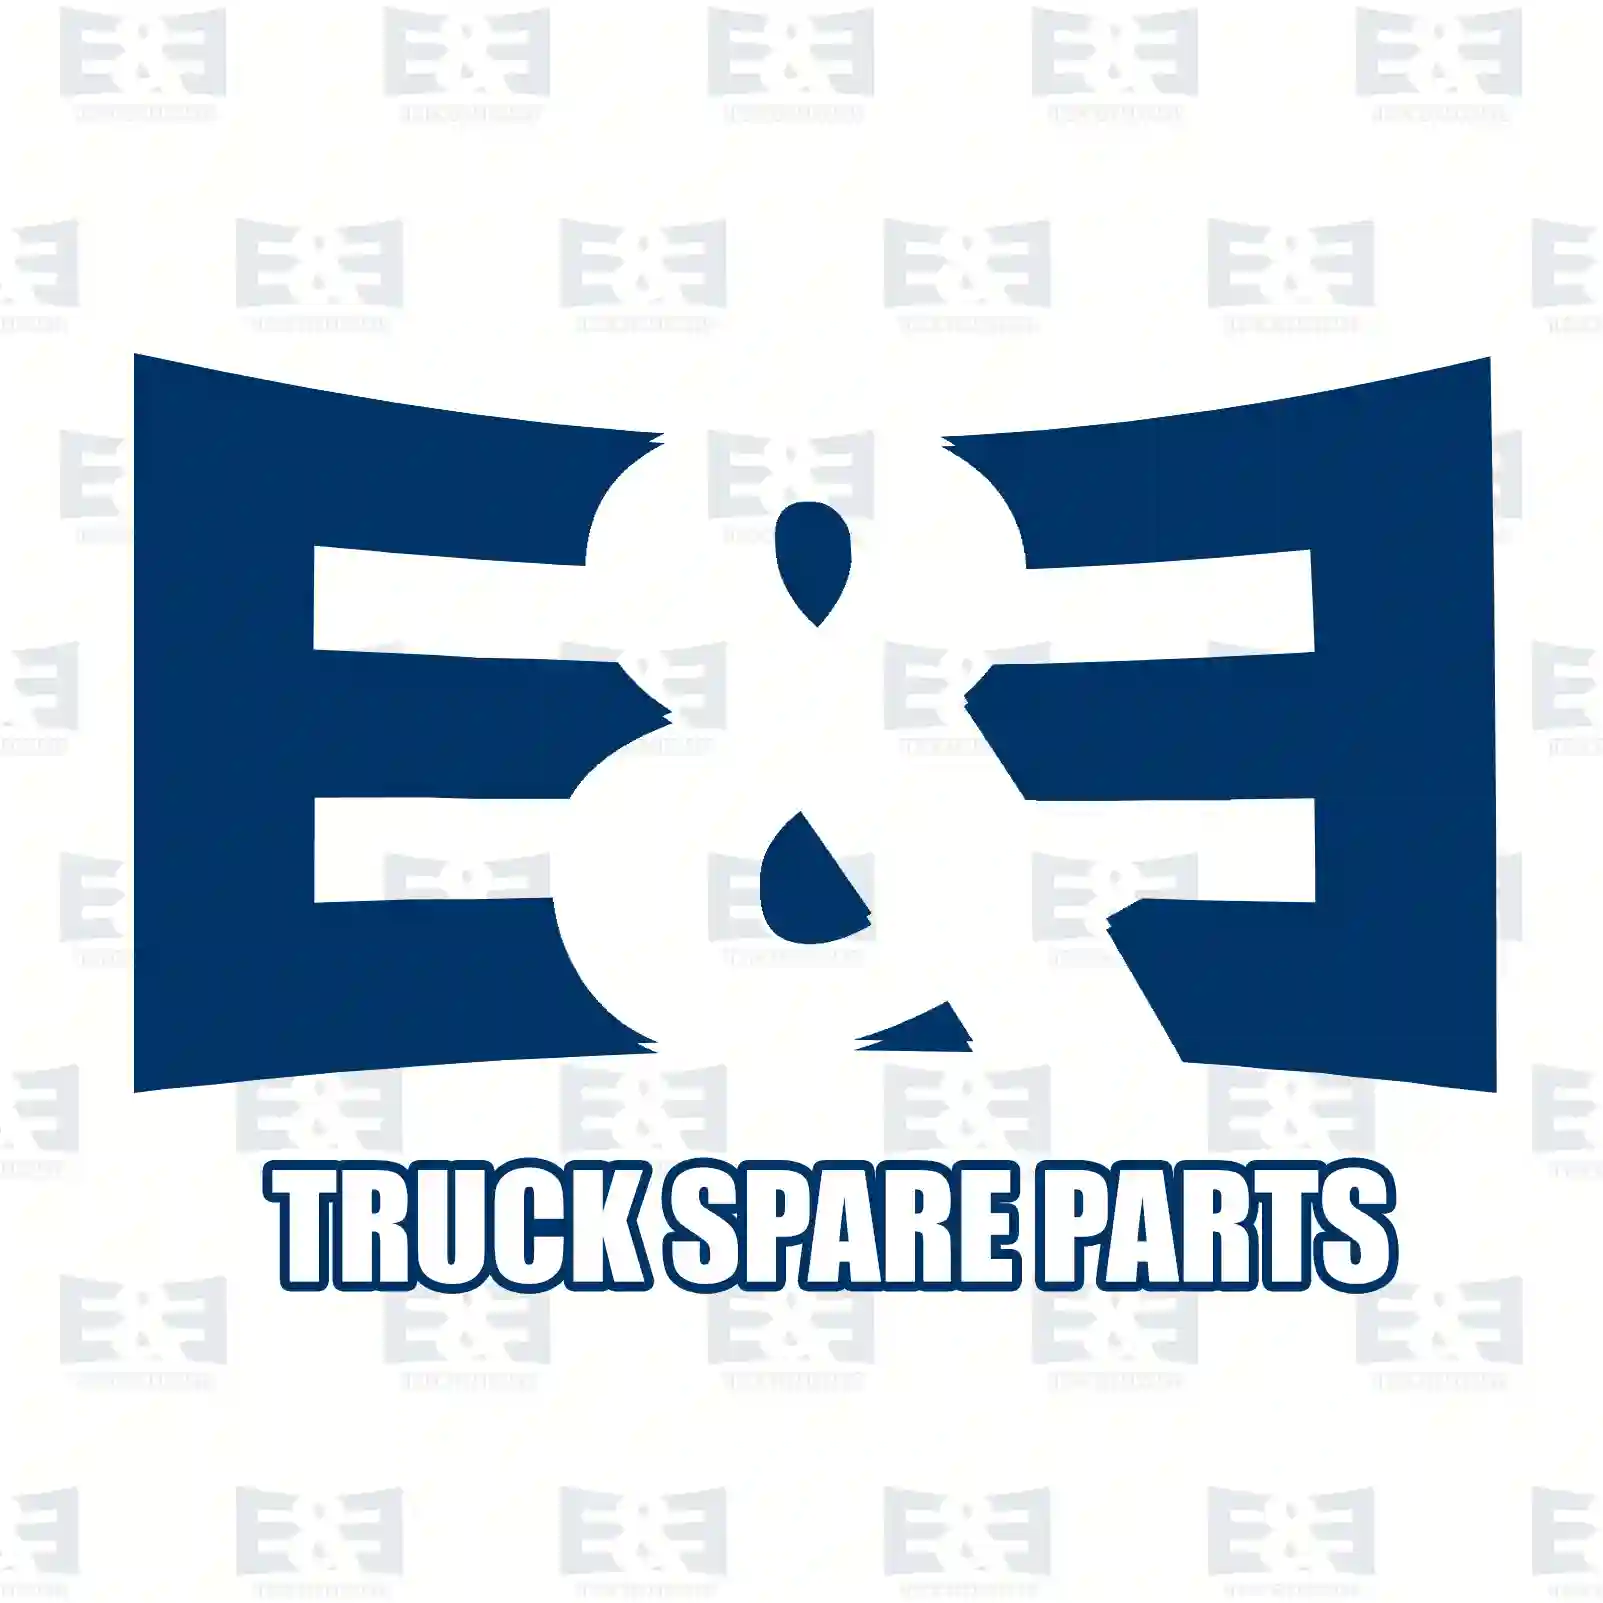 Bell hub, 2E2284728, 3463509433 ||  2E2284728 E&E Truck Spare Parts | Truck Spare Parts, Auotomotive Spare Parts Bell hub, 2E2284728, 3463509433 ||  2E2284728 E&E Truck Spare Parts | Truck Spare Parts, Auotomotive Spare Parts